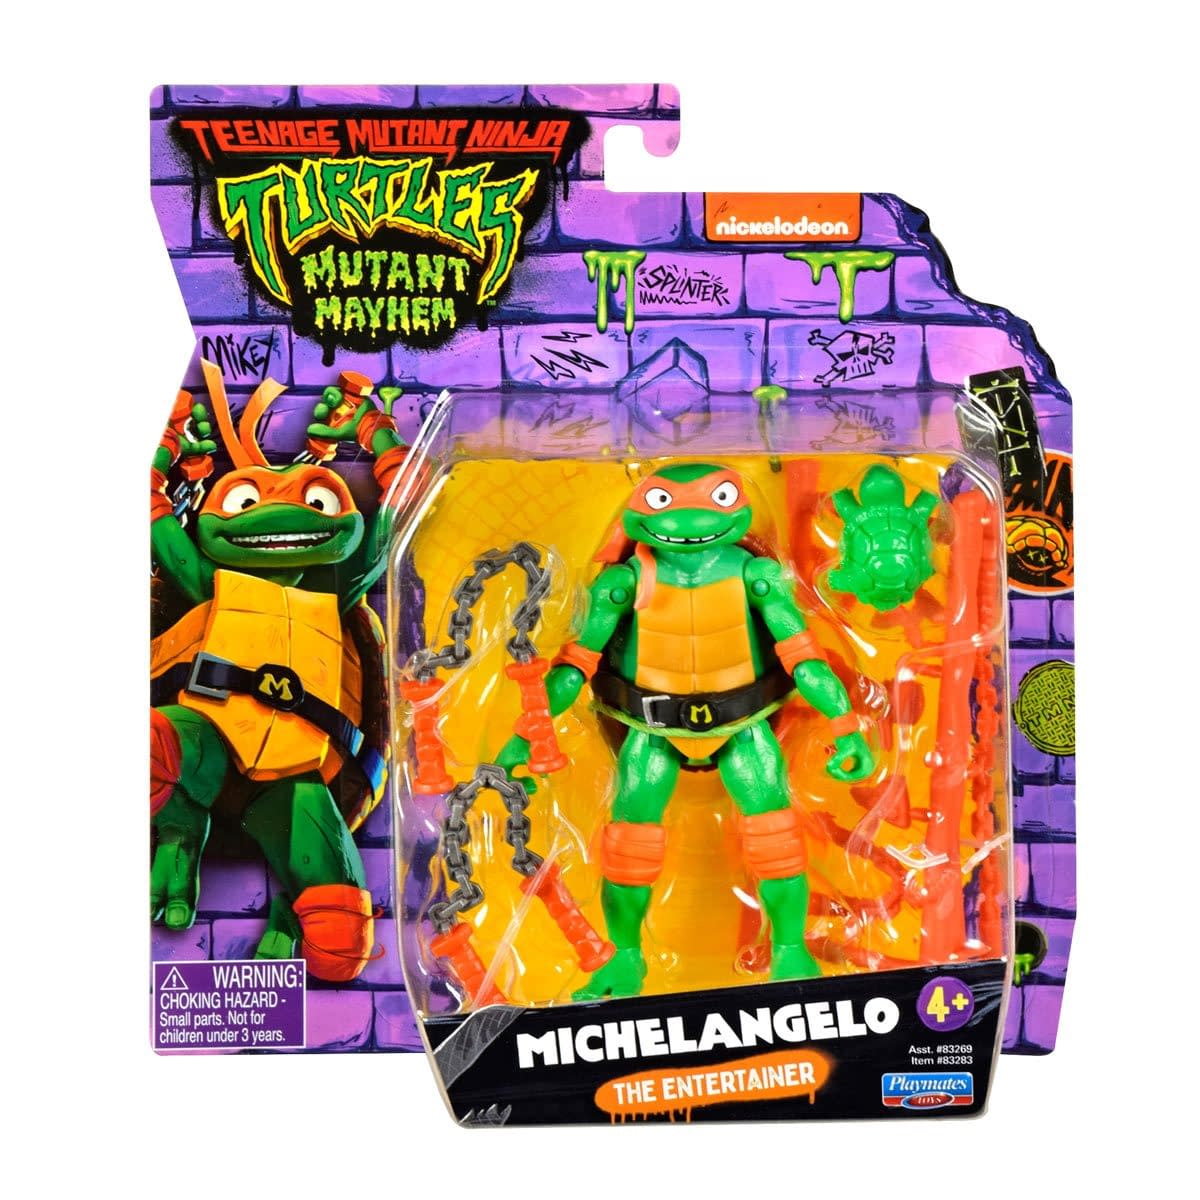 New Teenage Mutant Ninja Turtles: Mutant Mayhem Figures Hit Shelves